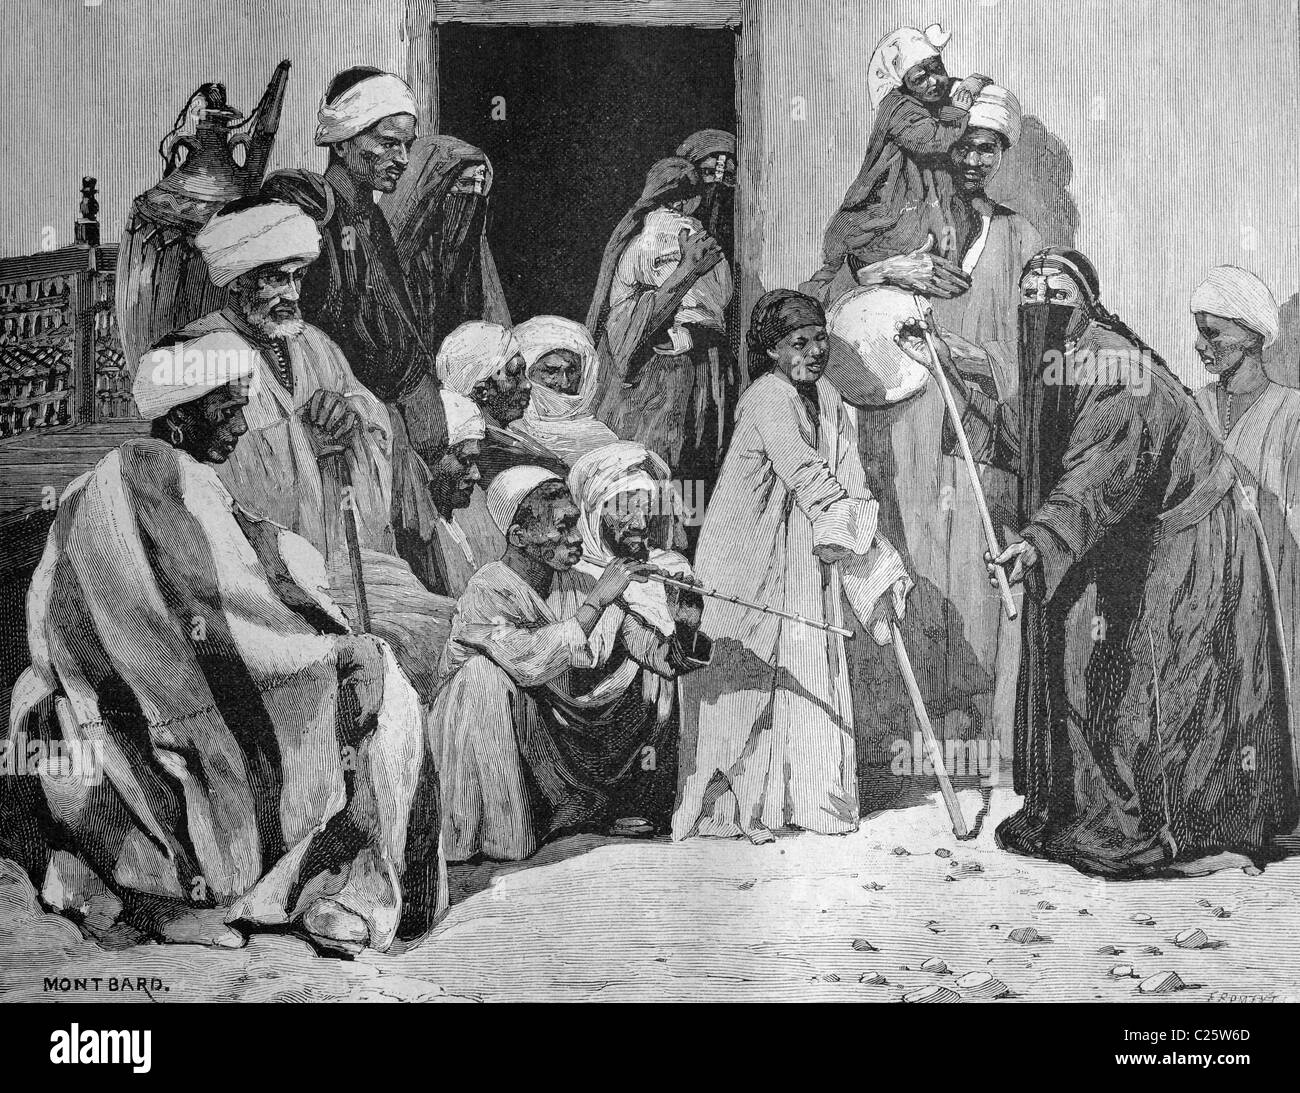 La danse du personnel dans une rue du Caire, Égypte, illustration historique vers 1893 Banque D'Images